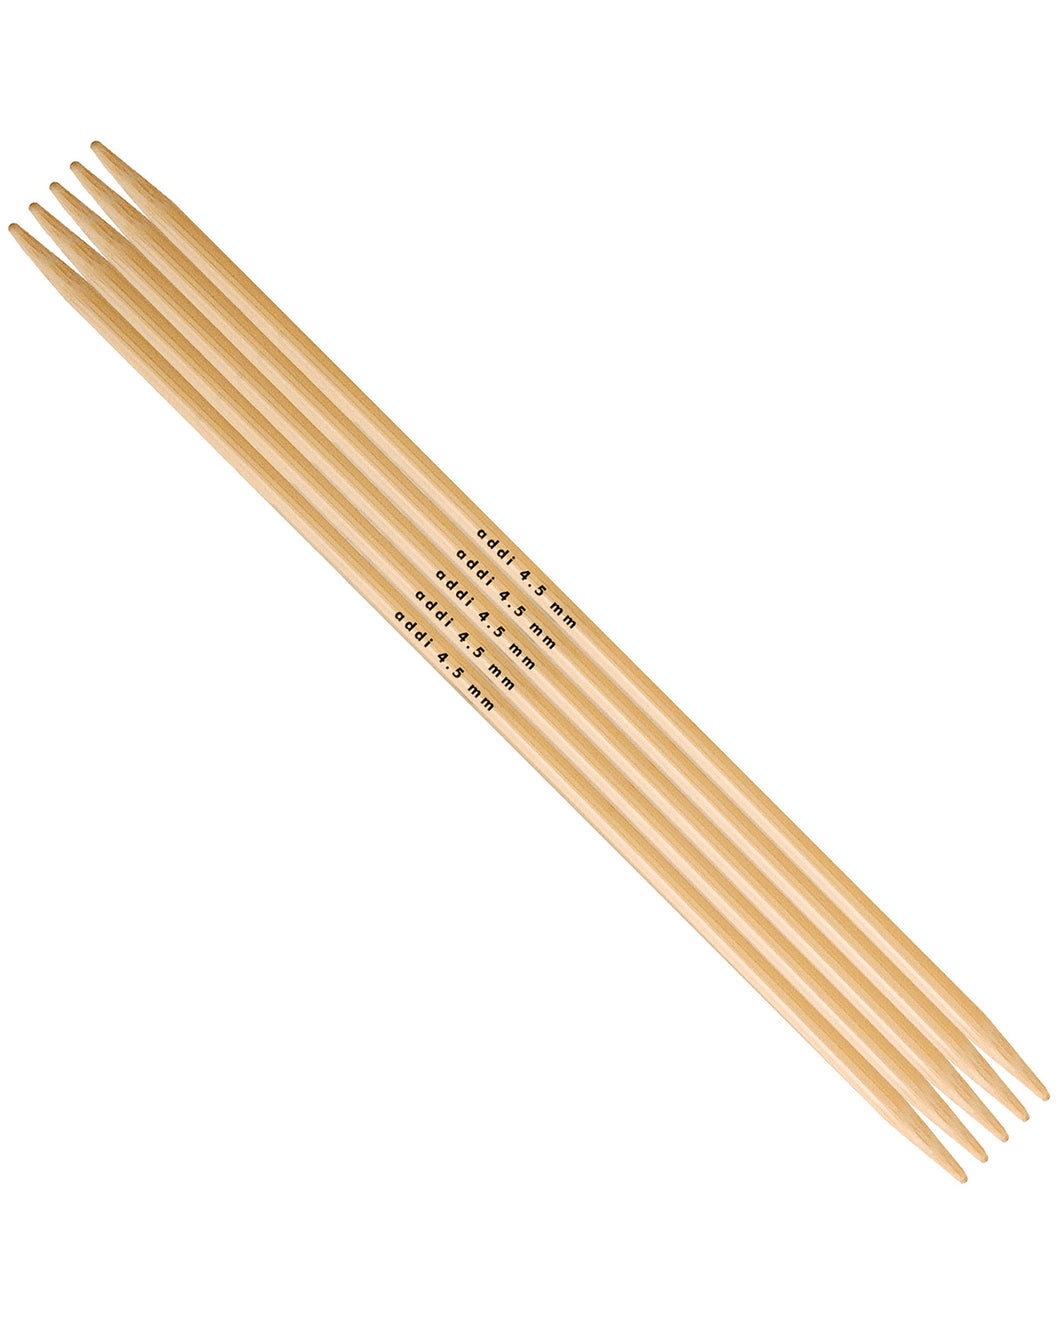 Strømpepinde Bambus 20 cm